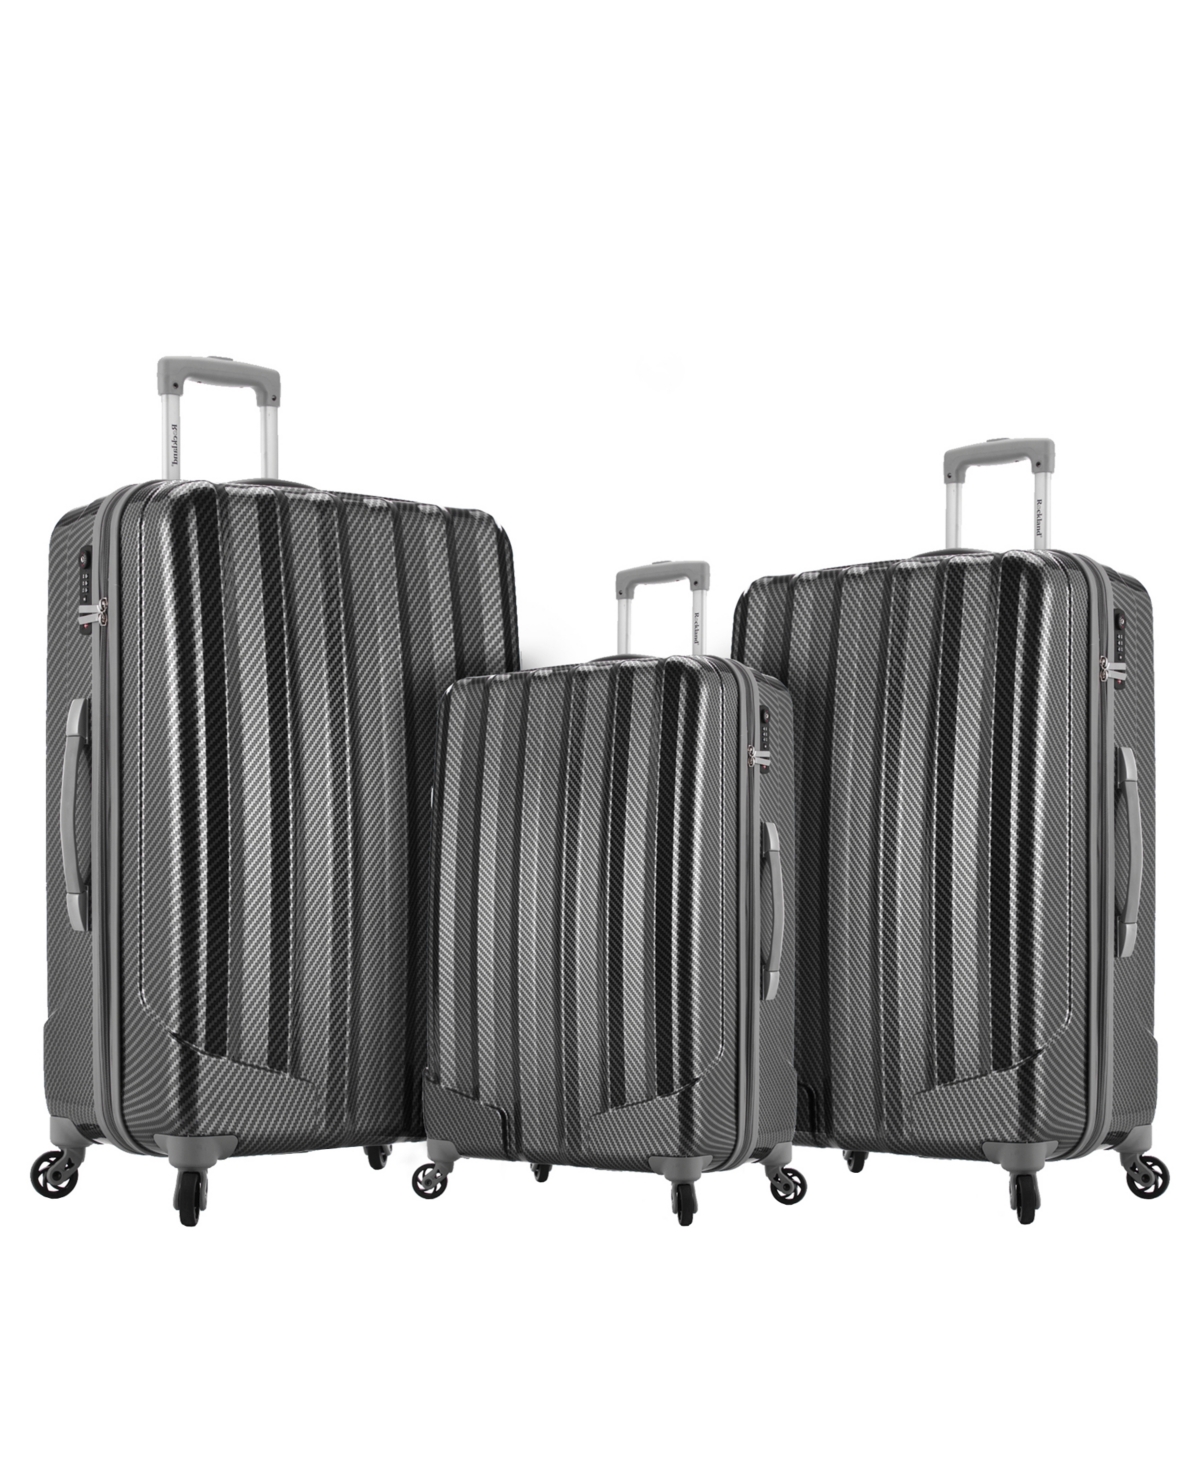 Barcelona 3-Pc. Hardside Luggage Set - Black